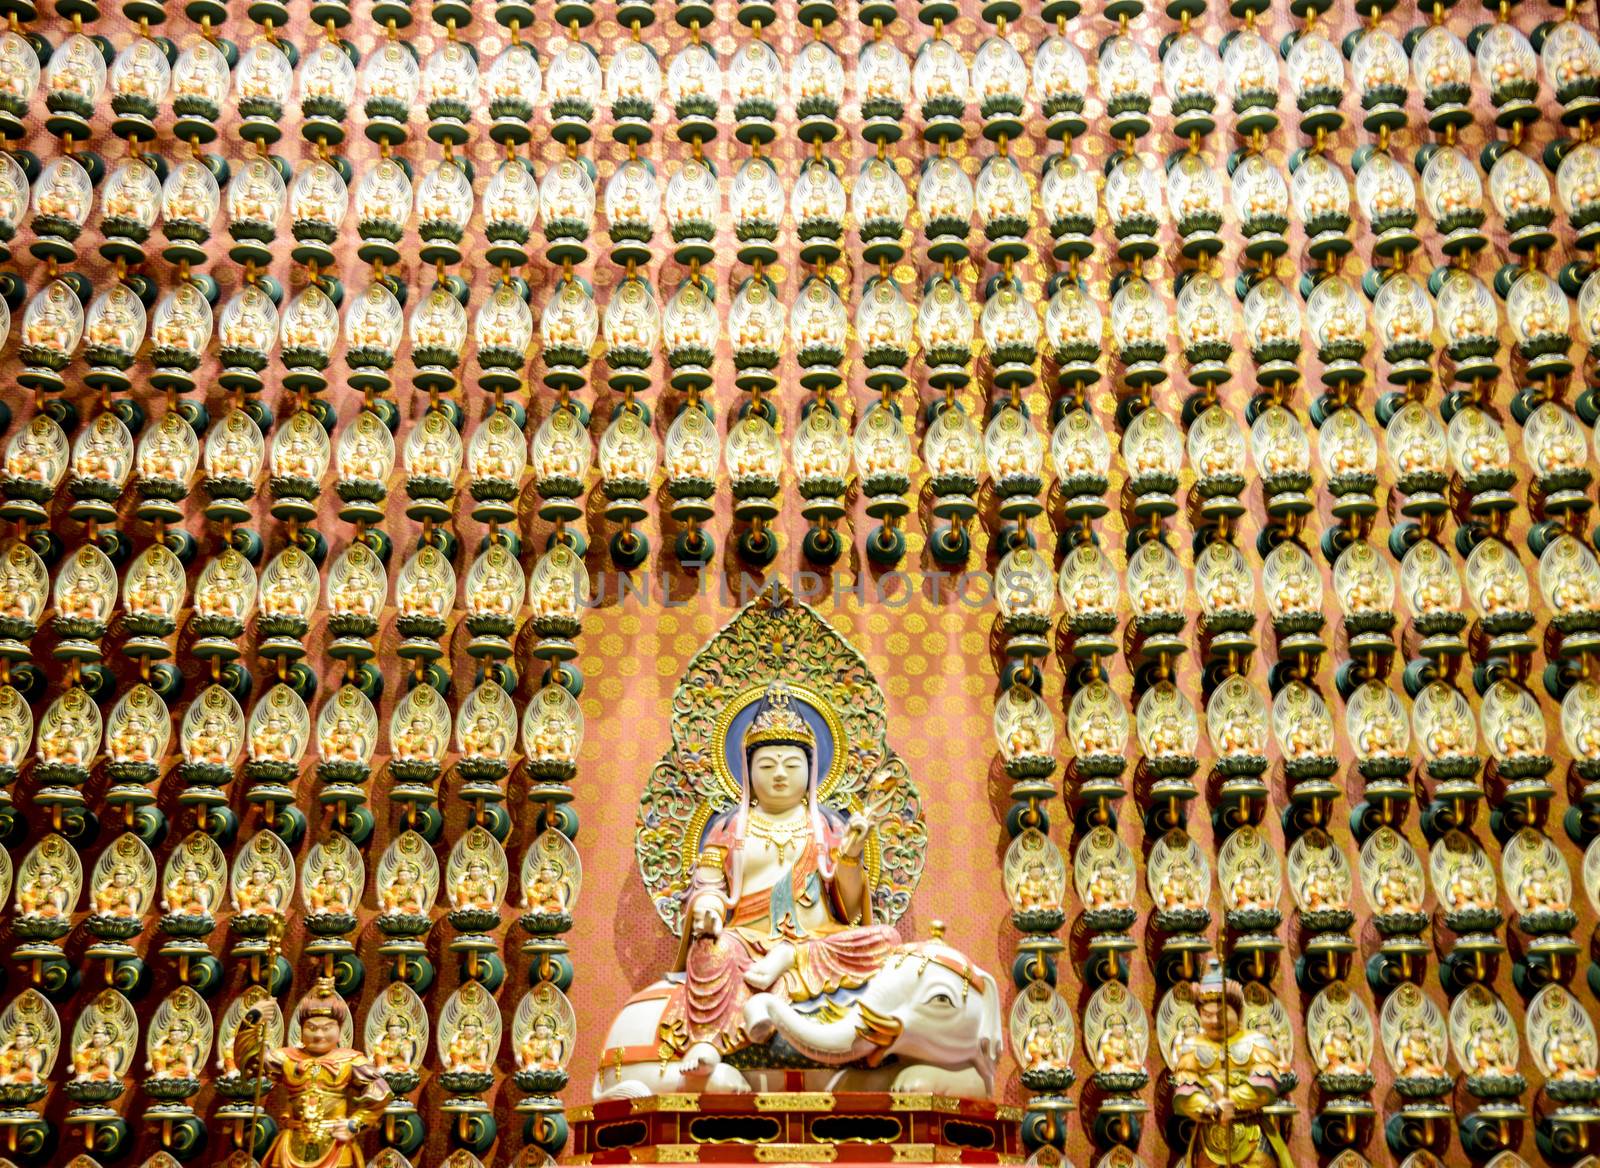 Guan Yin with thousand statues1 by gjeerawut